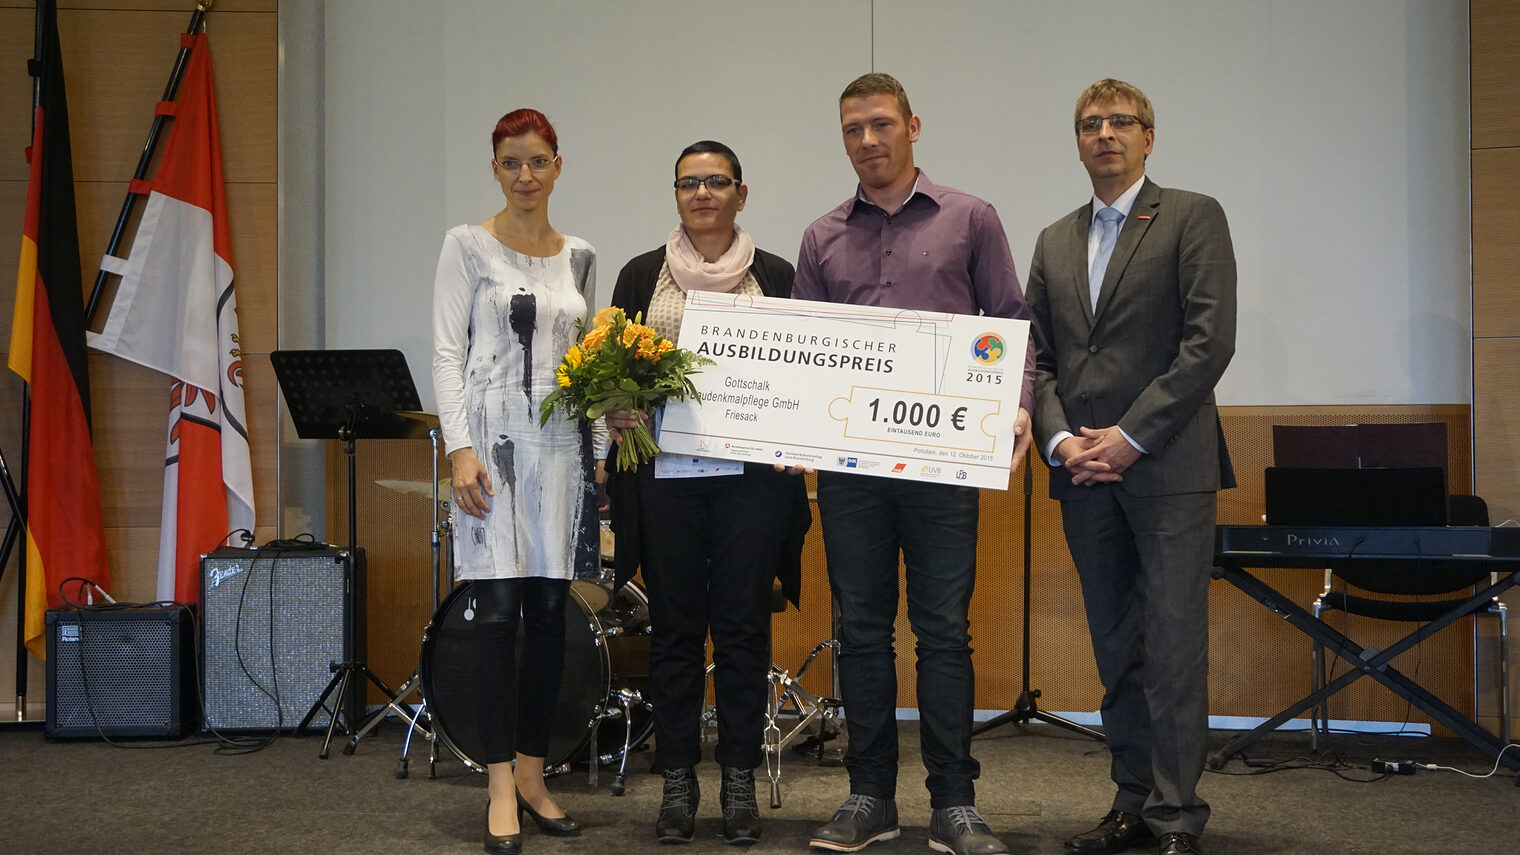 11. Ausbildungspreis des Landes Brandenburg in der Staatskanzlei in Potsdam verliehen. Die Gottschalk Baudenkmalpflege GmbH aus Friesack ist einer der Preisträger.